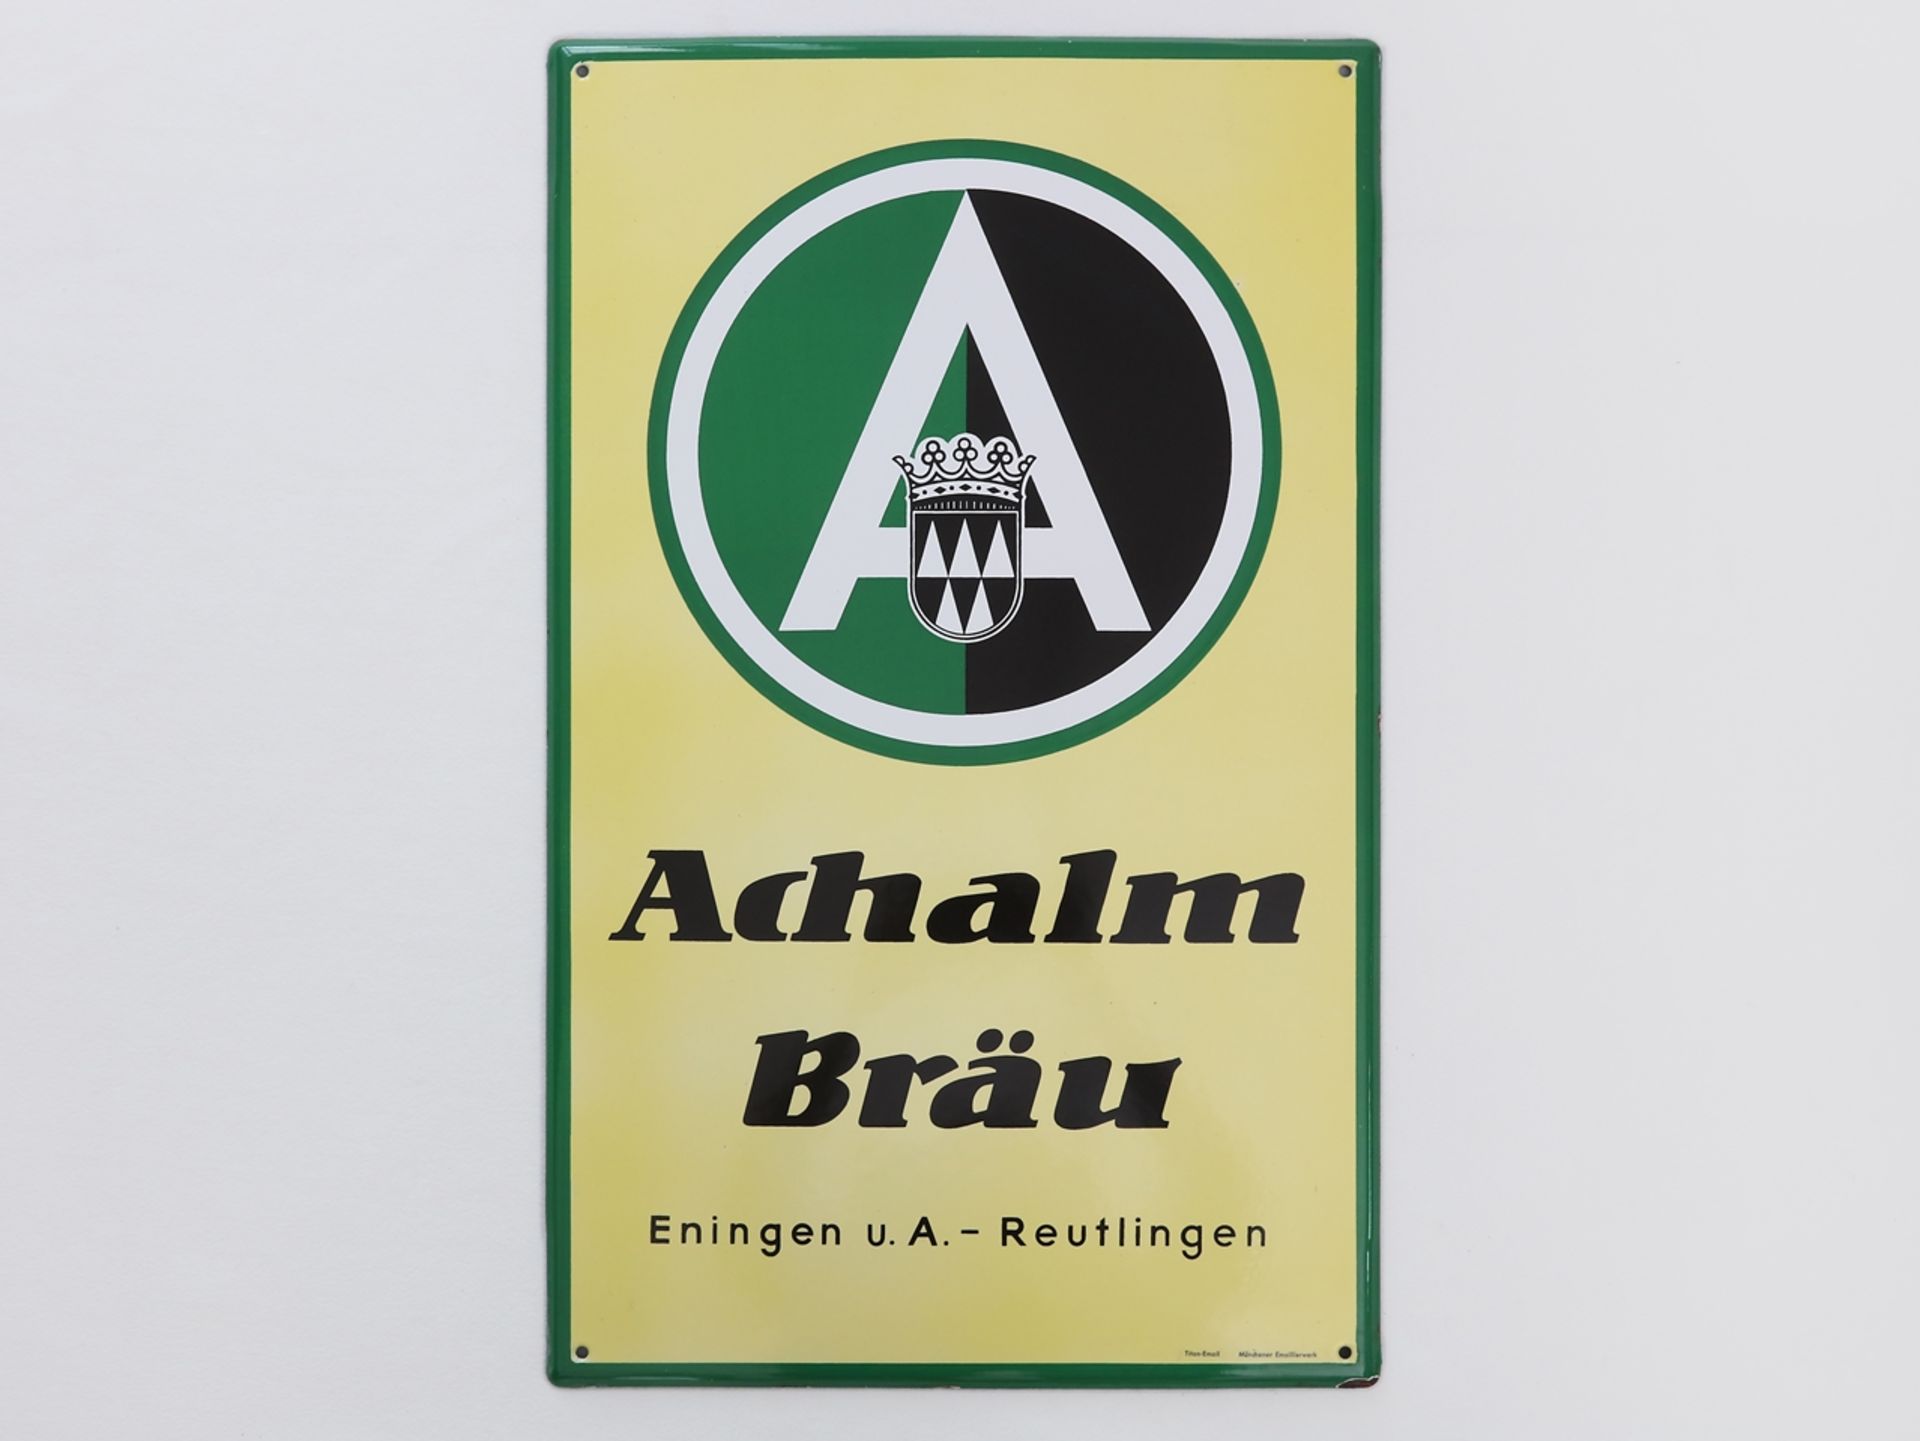 Emailschild Achalm Bräu, Eningen u.A. -  Reutlingen, um 1950 - Bild 7 aus 7